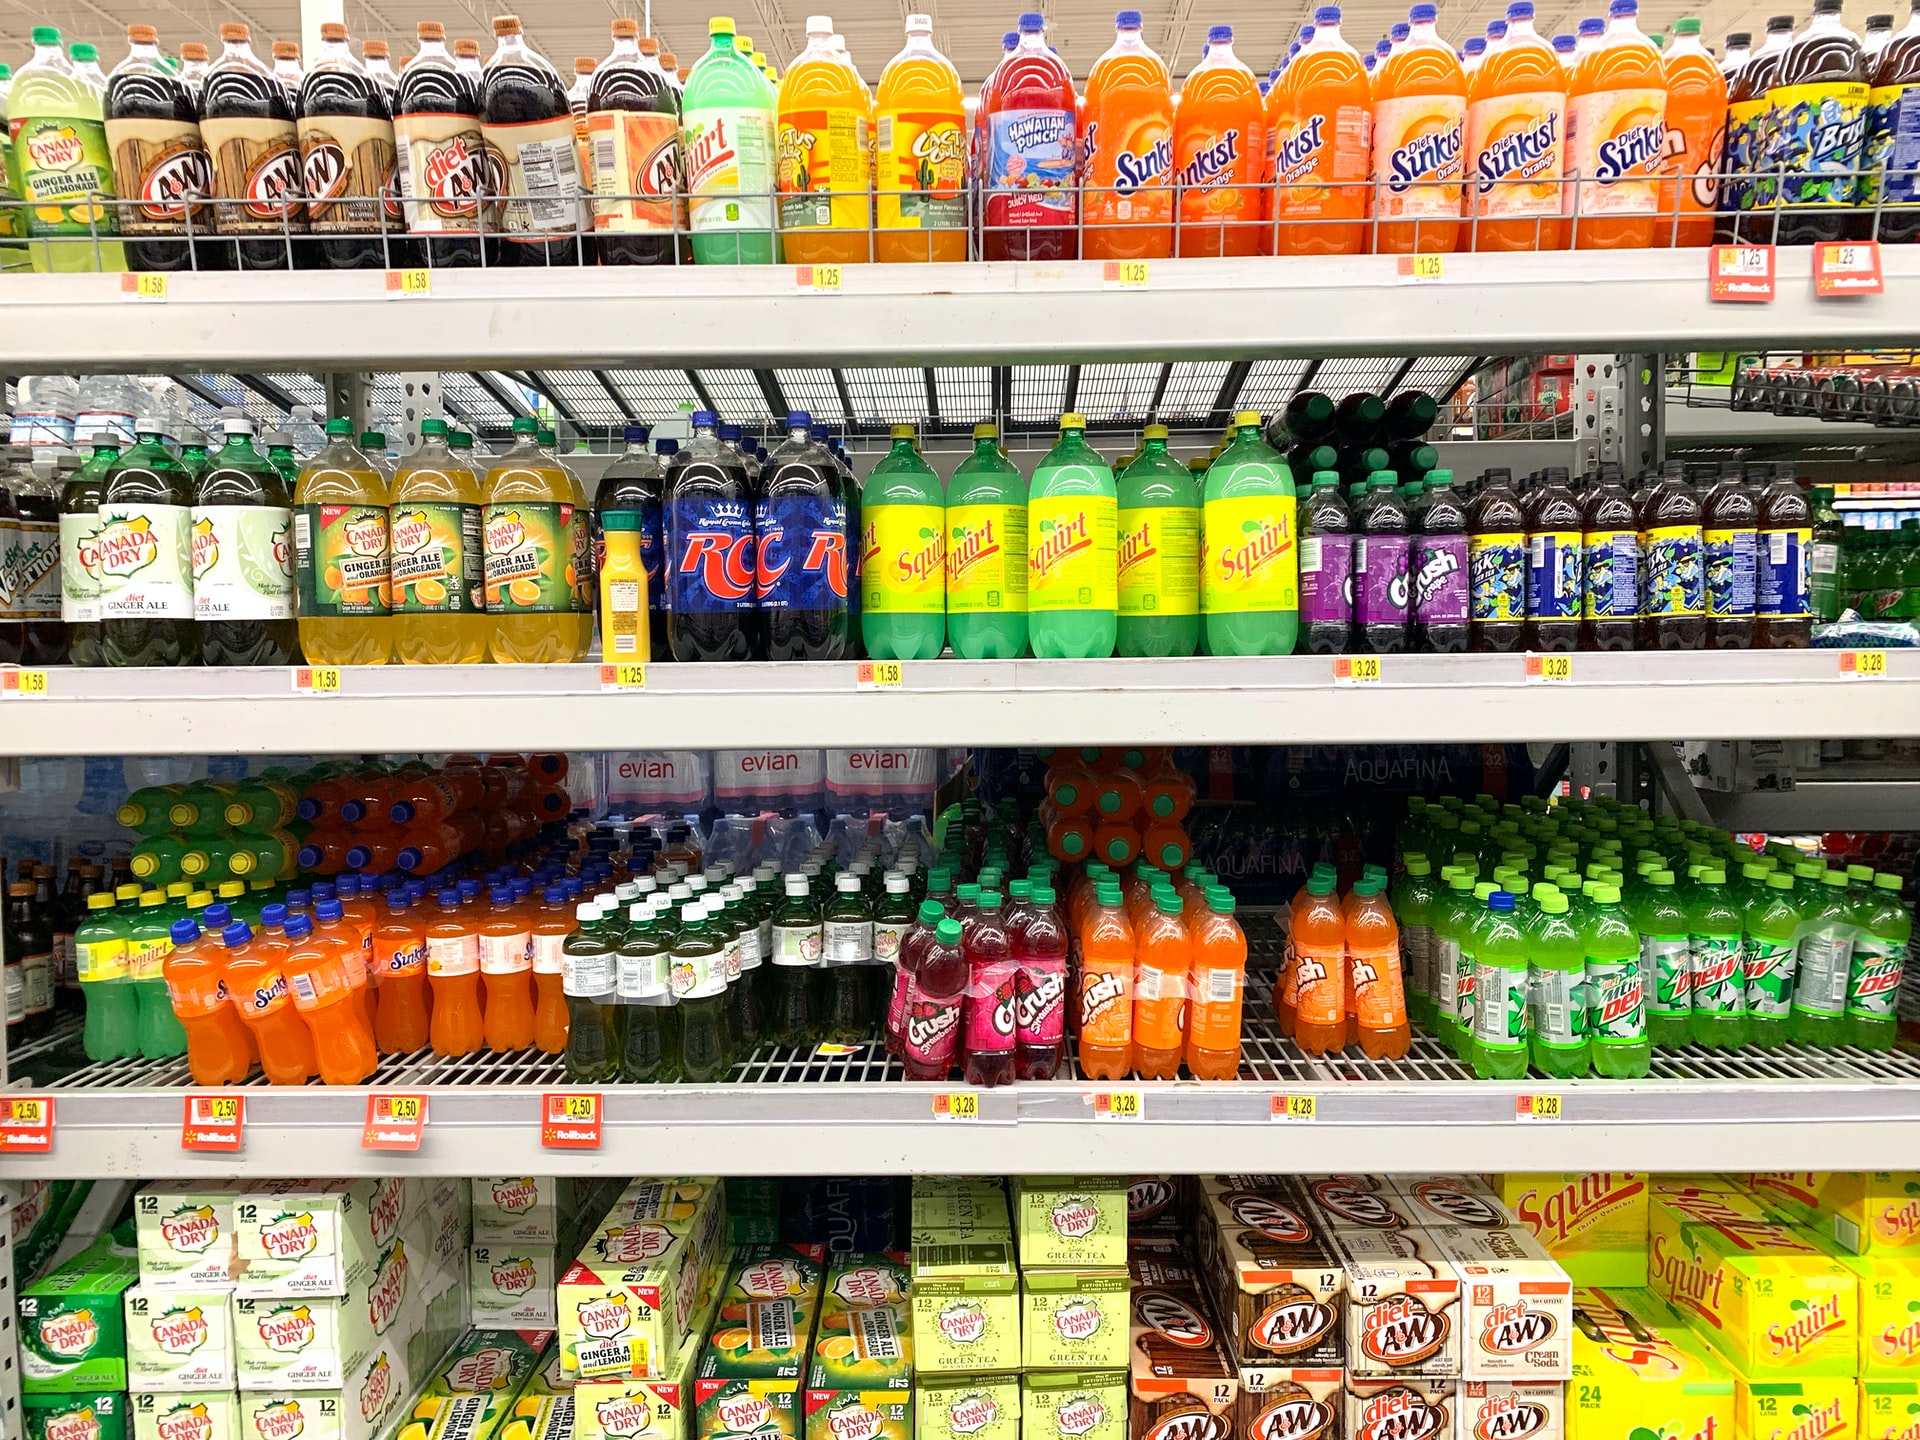 Compare os preços de produtos iguais para economizar no supermercado.